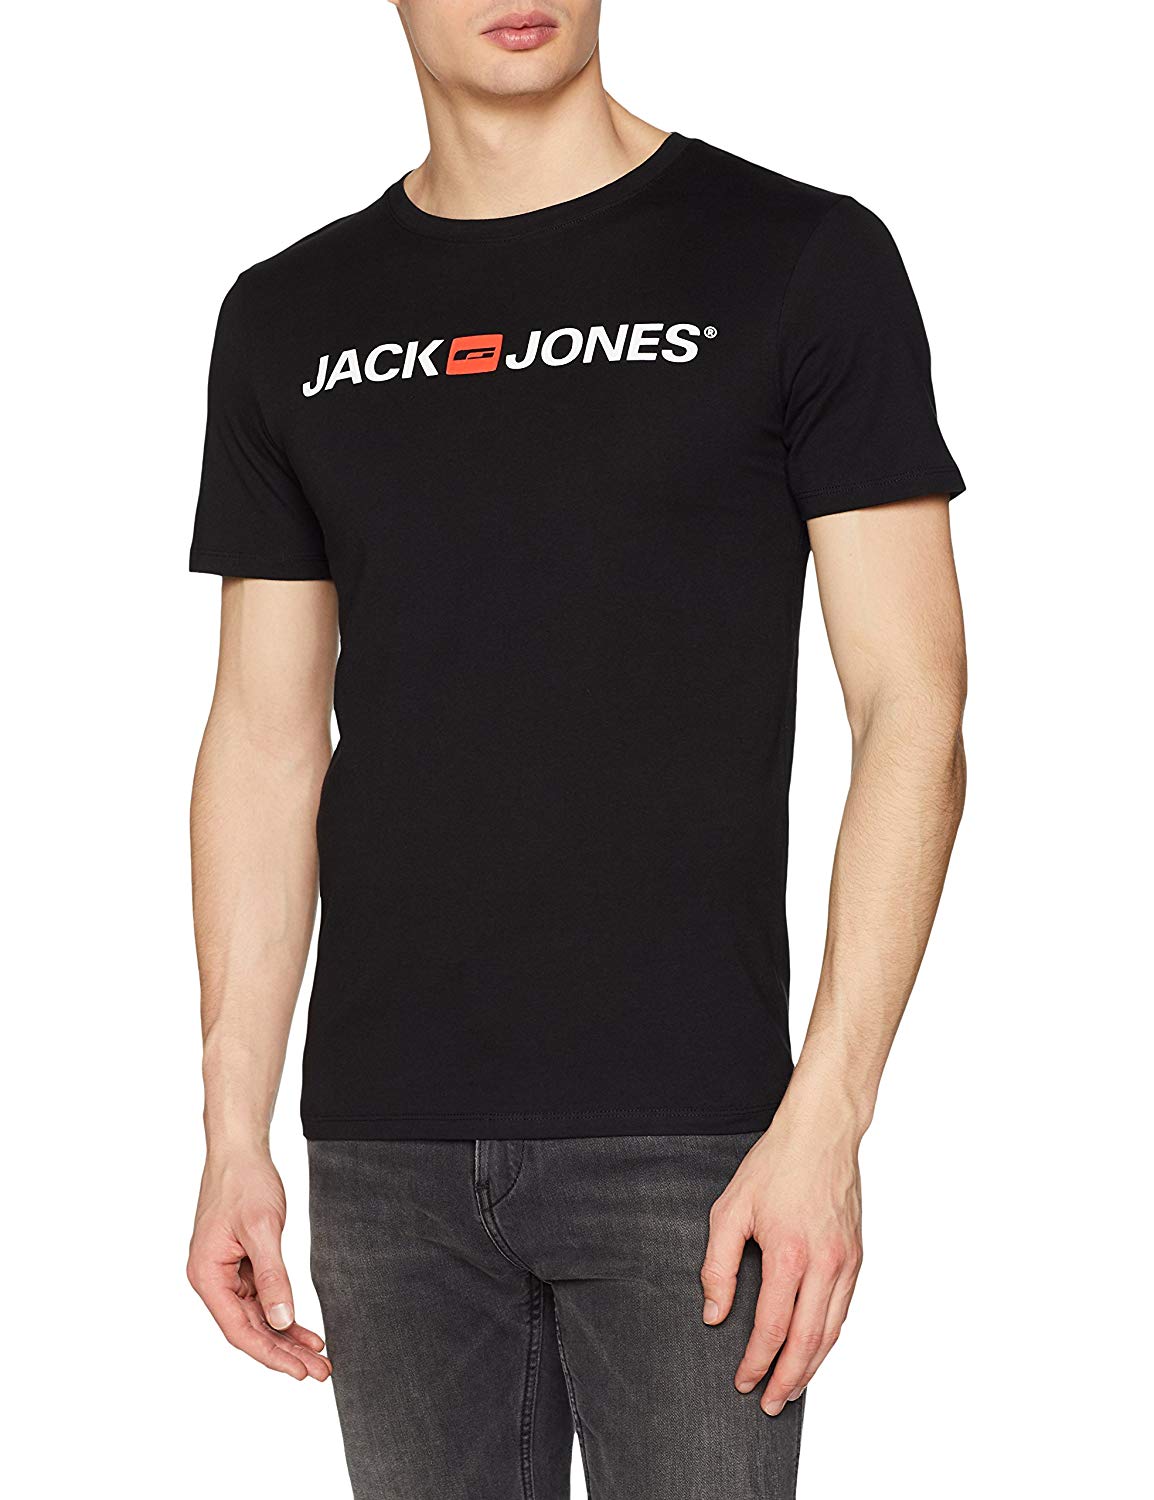 JACK & JONES Camiseta para Hombre desde 5,9€